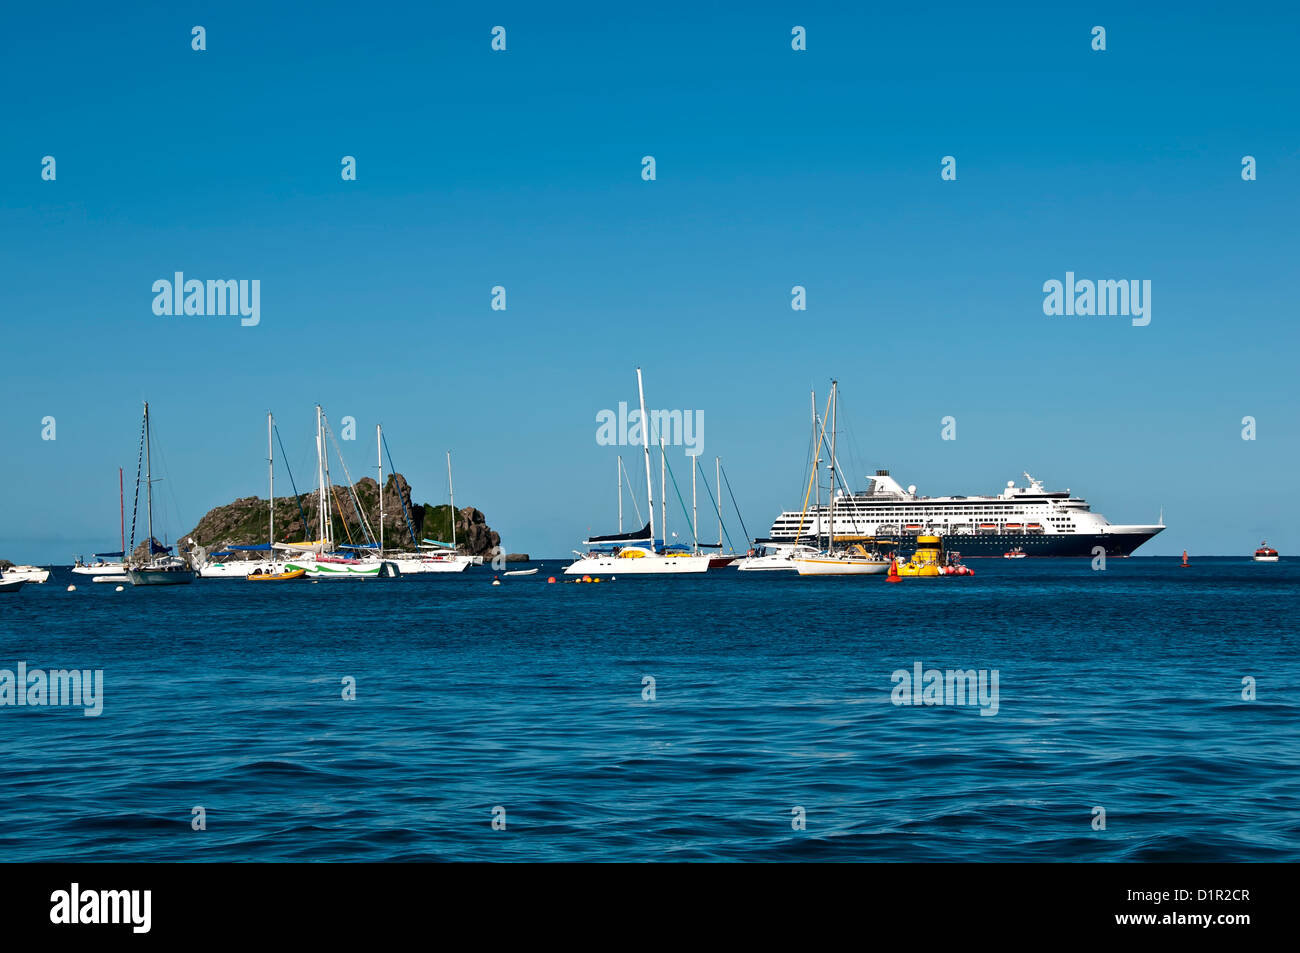 Gustavia la entrada del puerto con veleros anclados y gran crucero, Saint Barthelemy Foto de stock